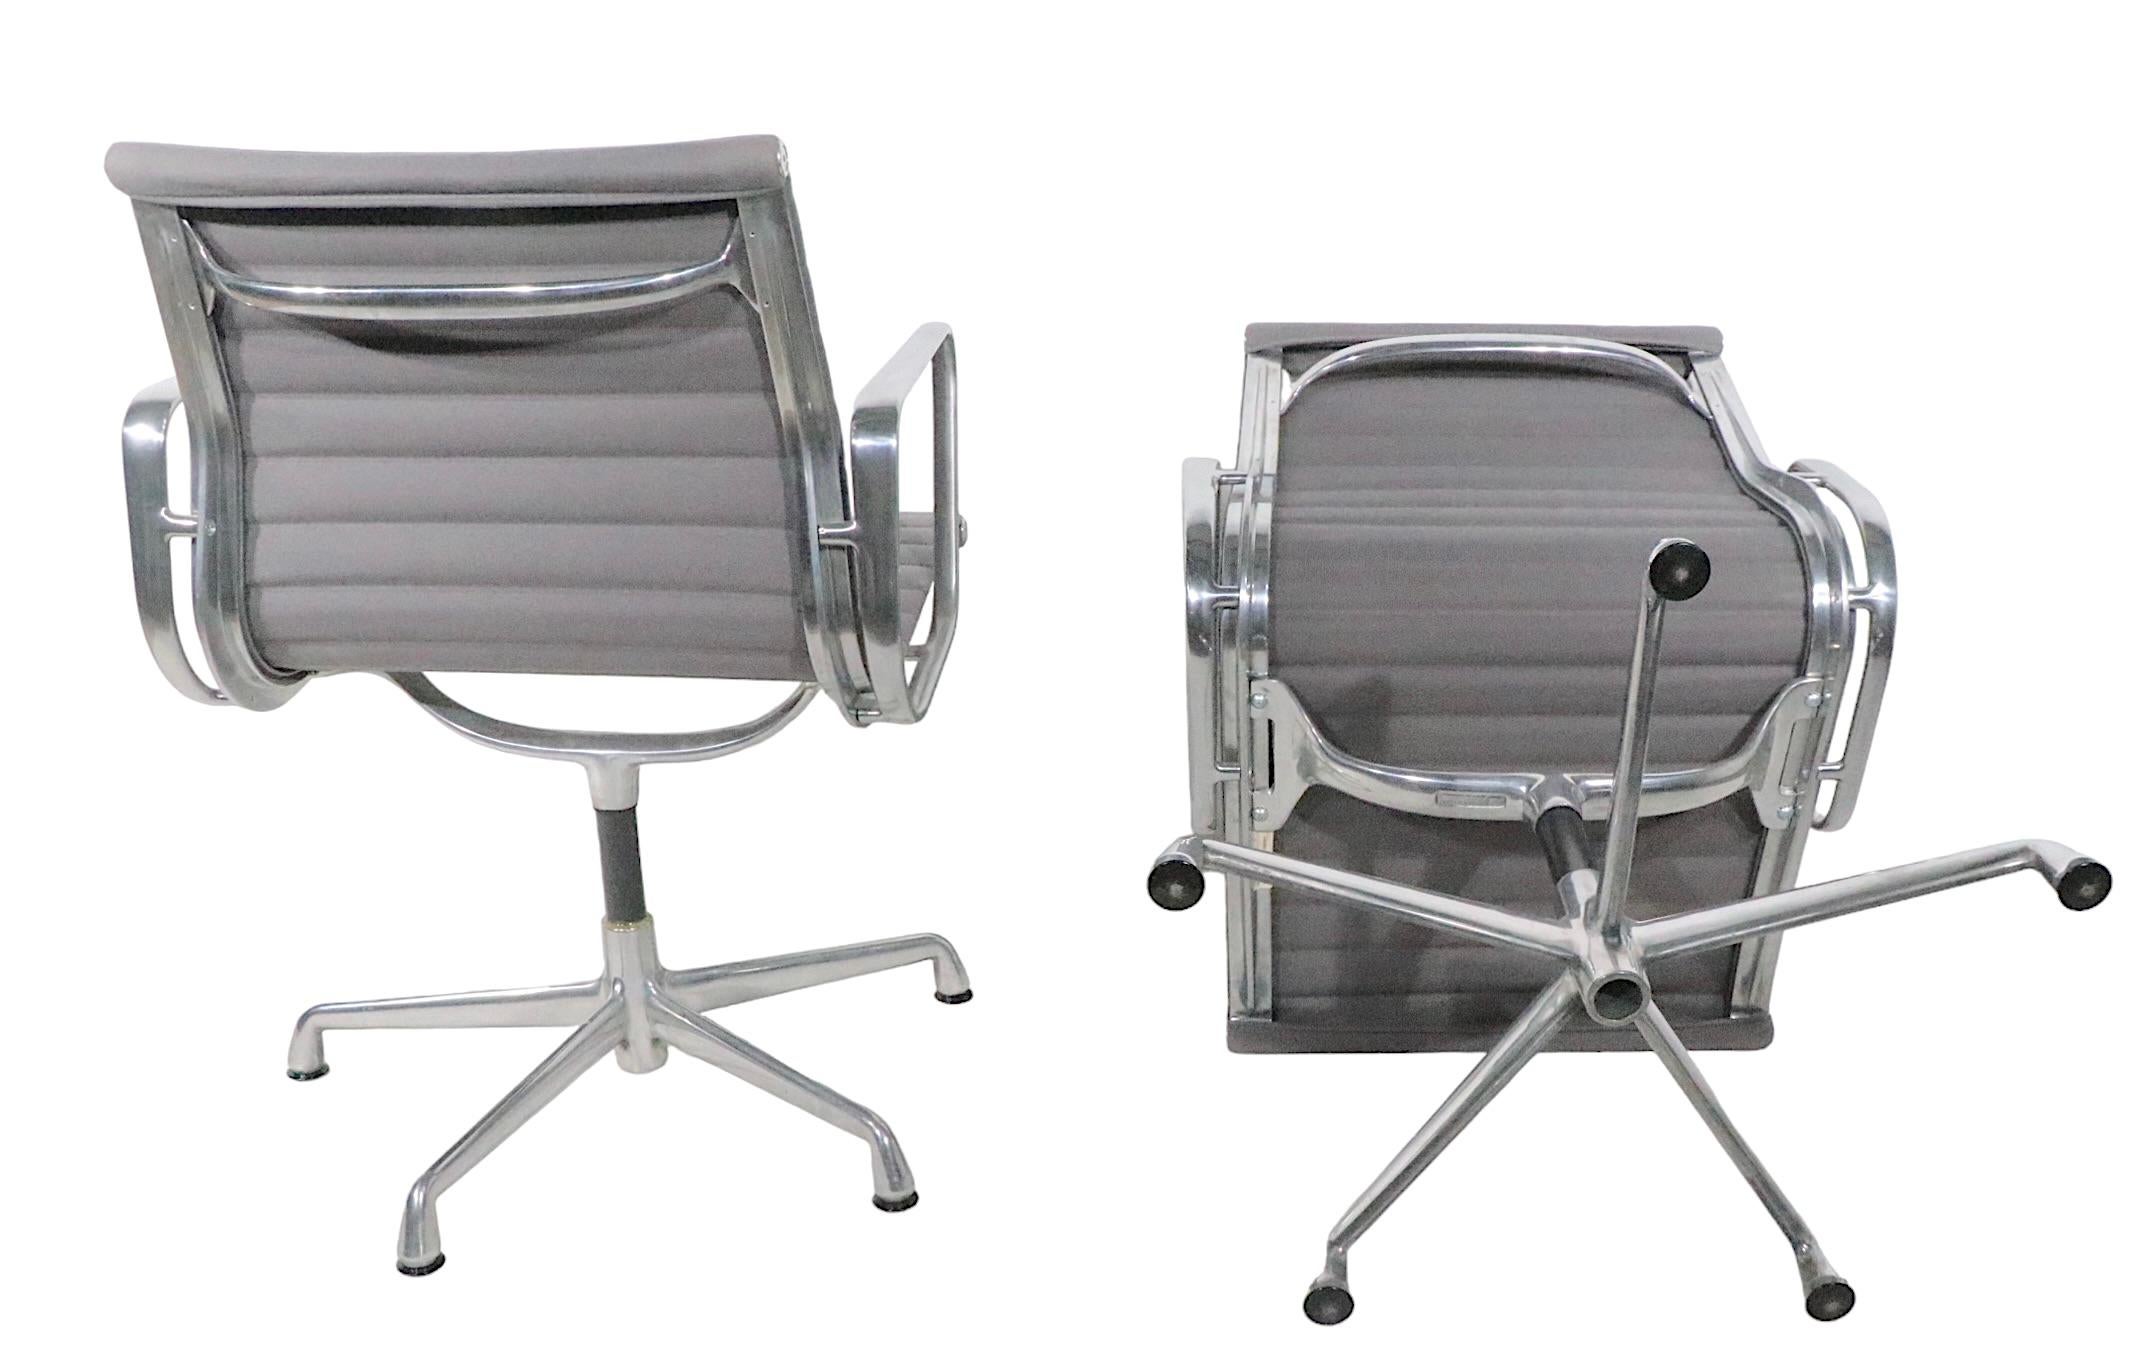 Ensemble de 4 chaises de gestion de groupe Eames en aluminium, en tissu gris, avec des cadres en aluminium moulé. Les chaises sont toutes en excellent état, d'origine, propres et prêtes à l'emploi. Elles sont toutes marquées Herman Miller au verso.